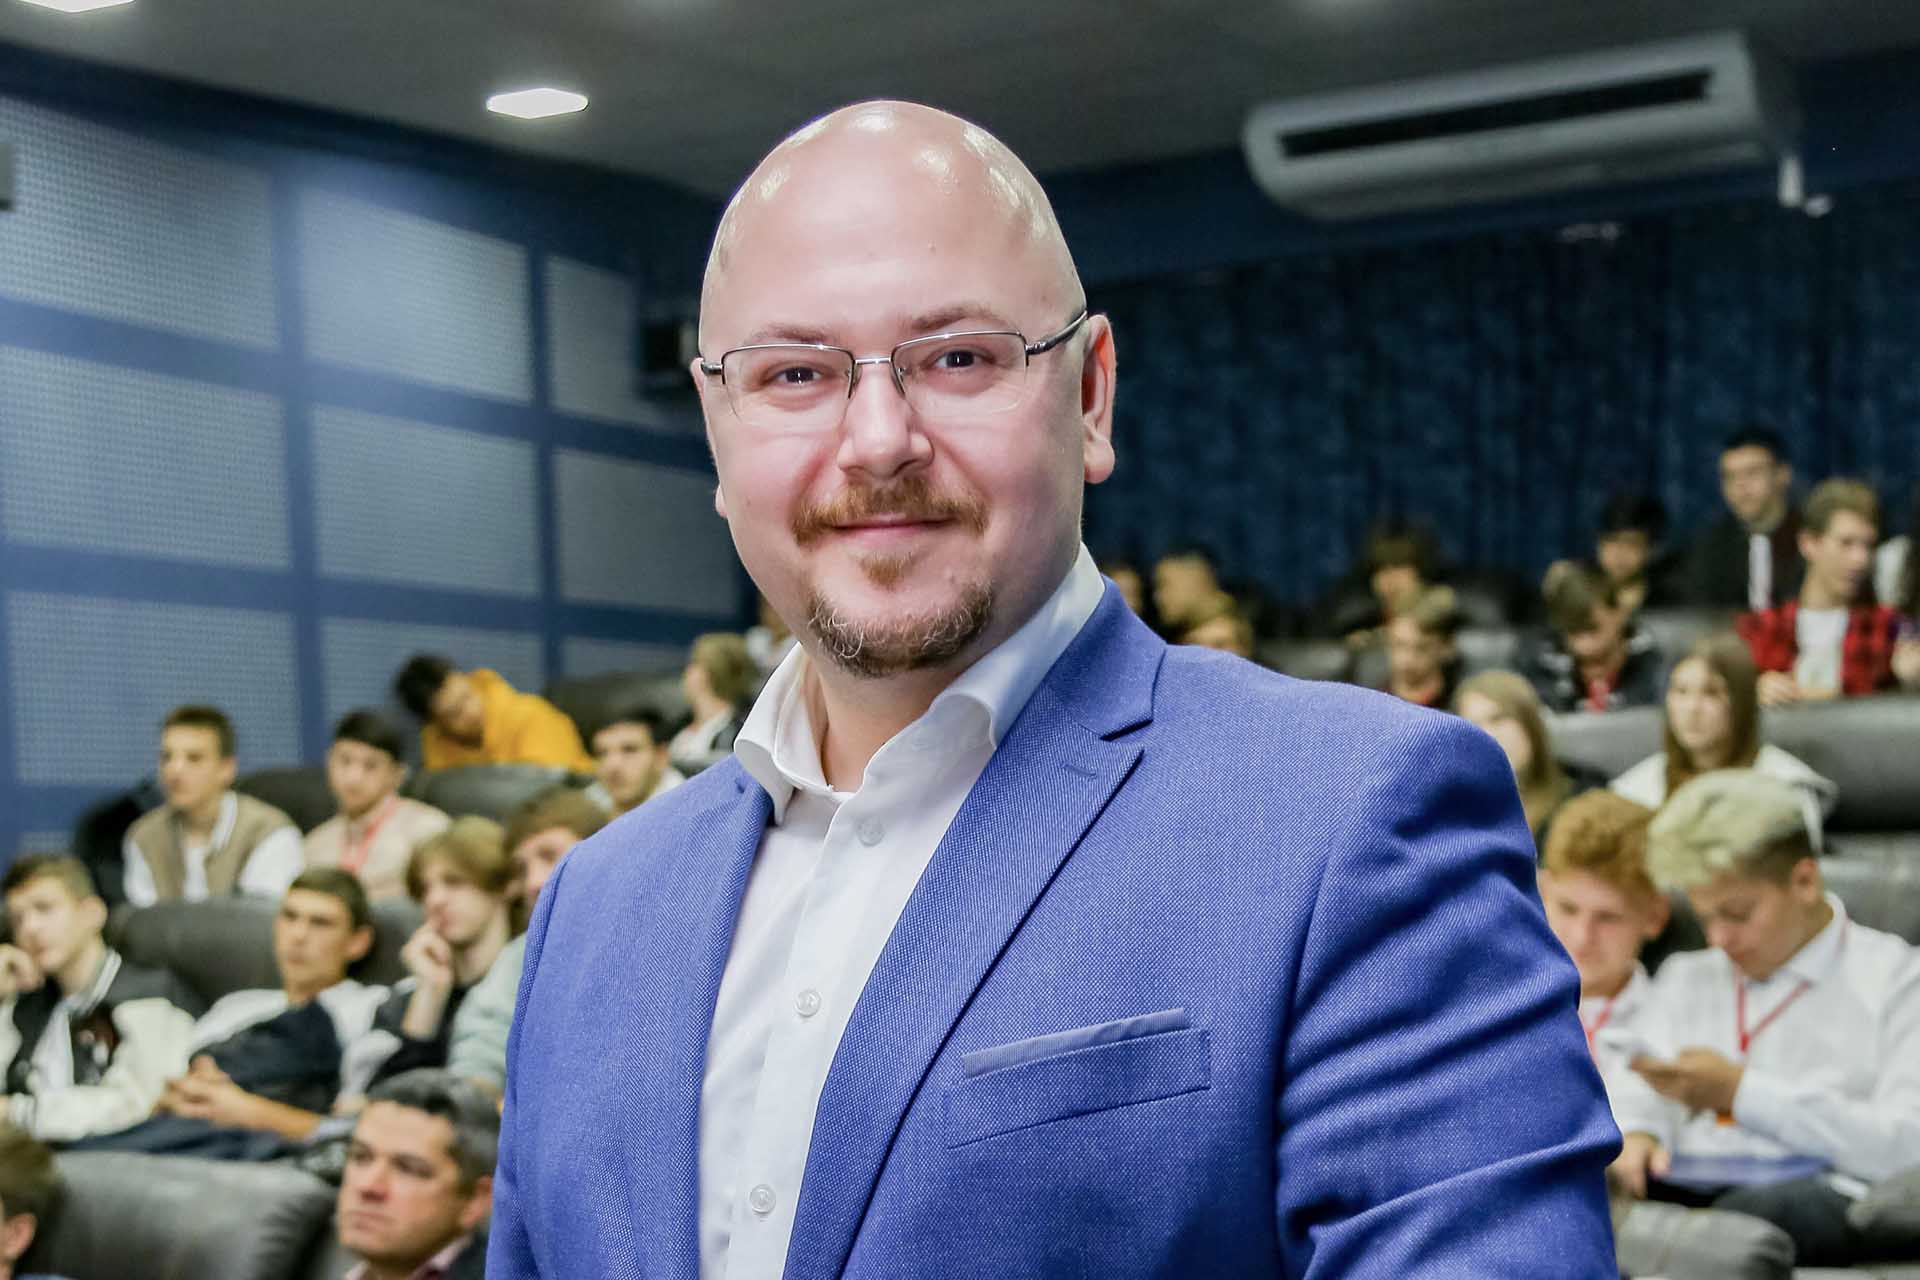 Спикер: Васьков Владимир. Бизнес-тренер, эксперт в построении отделов продаж